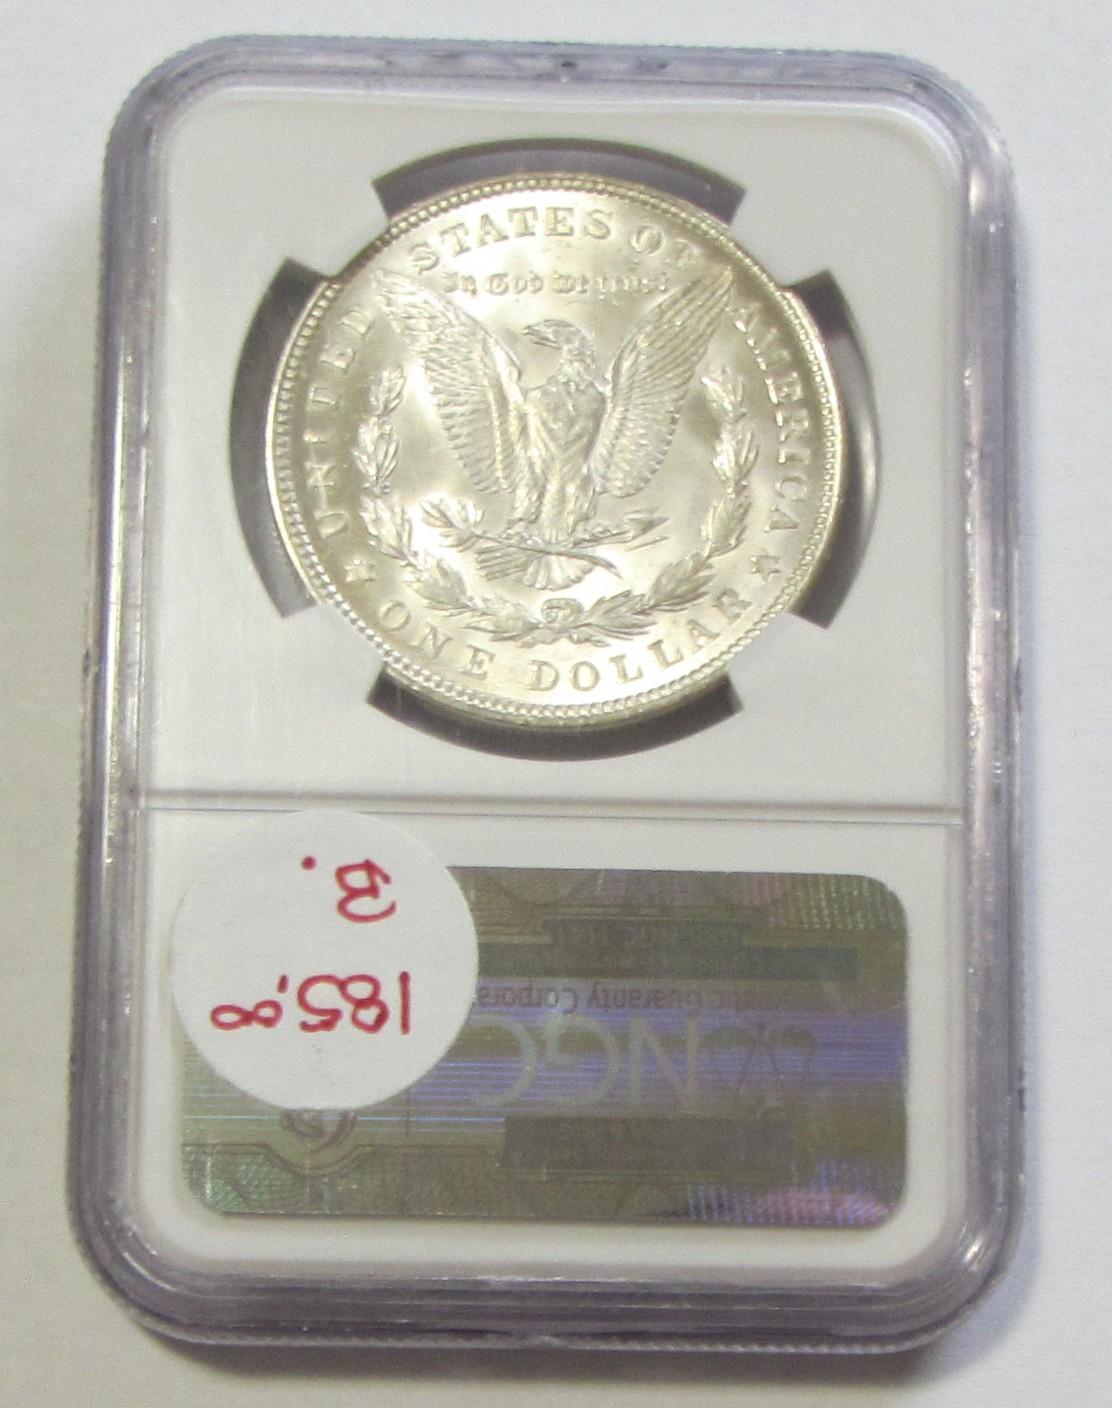 $1 1921 MORGAN NGC MS GEM 65